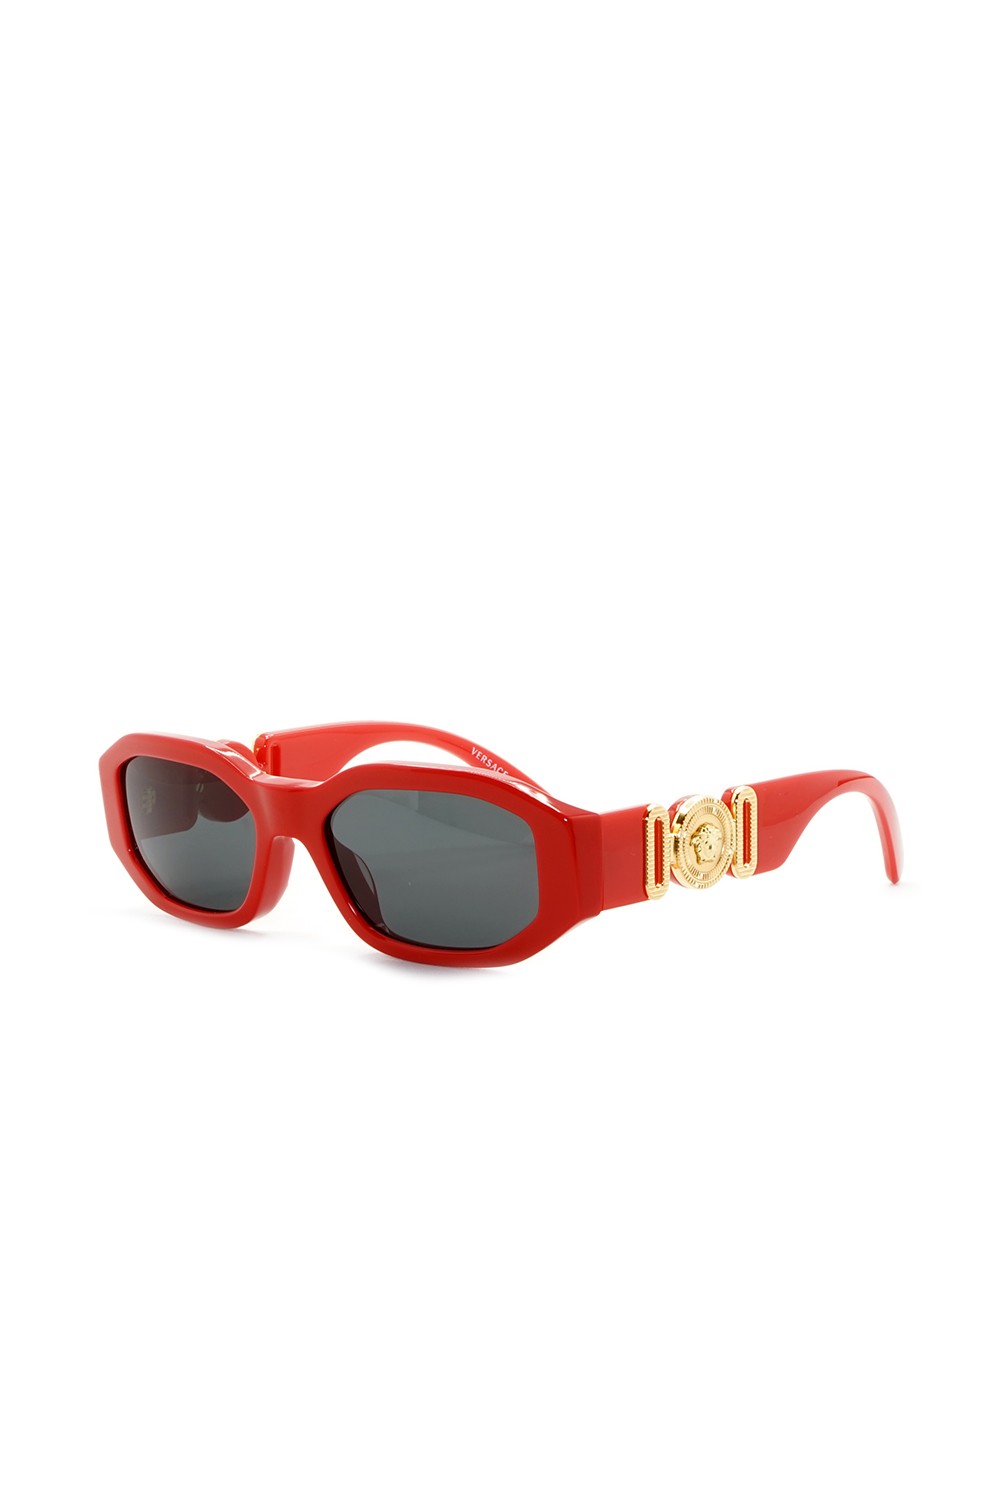 Versace - Occhiali da sole in celluloide rettangolari per bambini rosso -